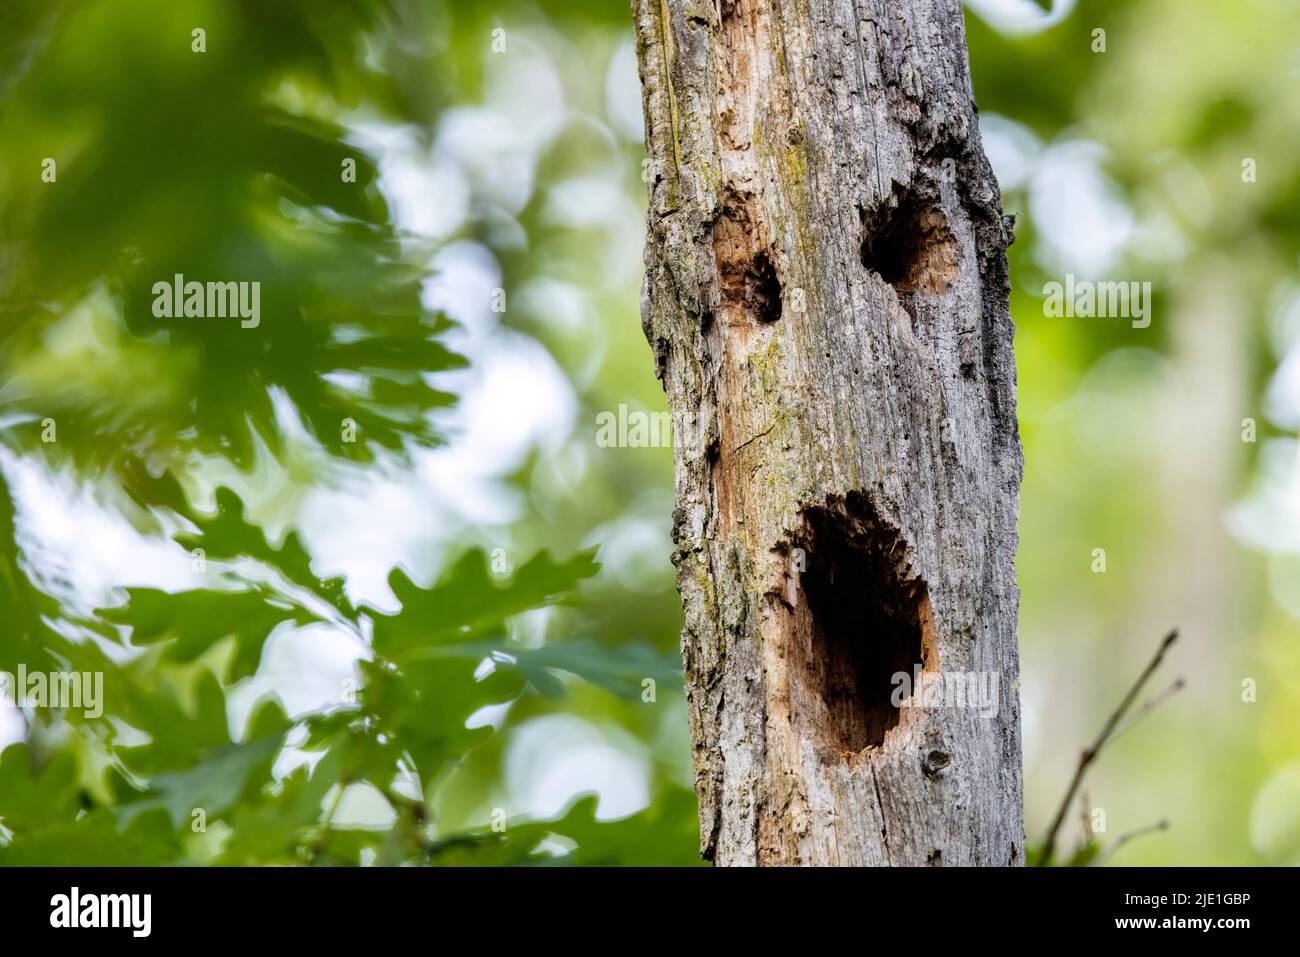 Cara de miedo en tronco de árbol - Brevard, Carolina del Norte, Estados Unidos Foto de stock